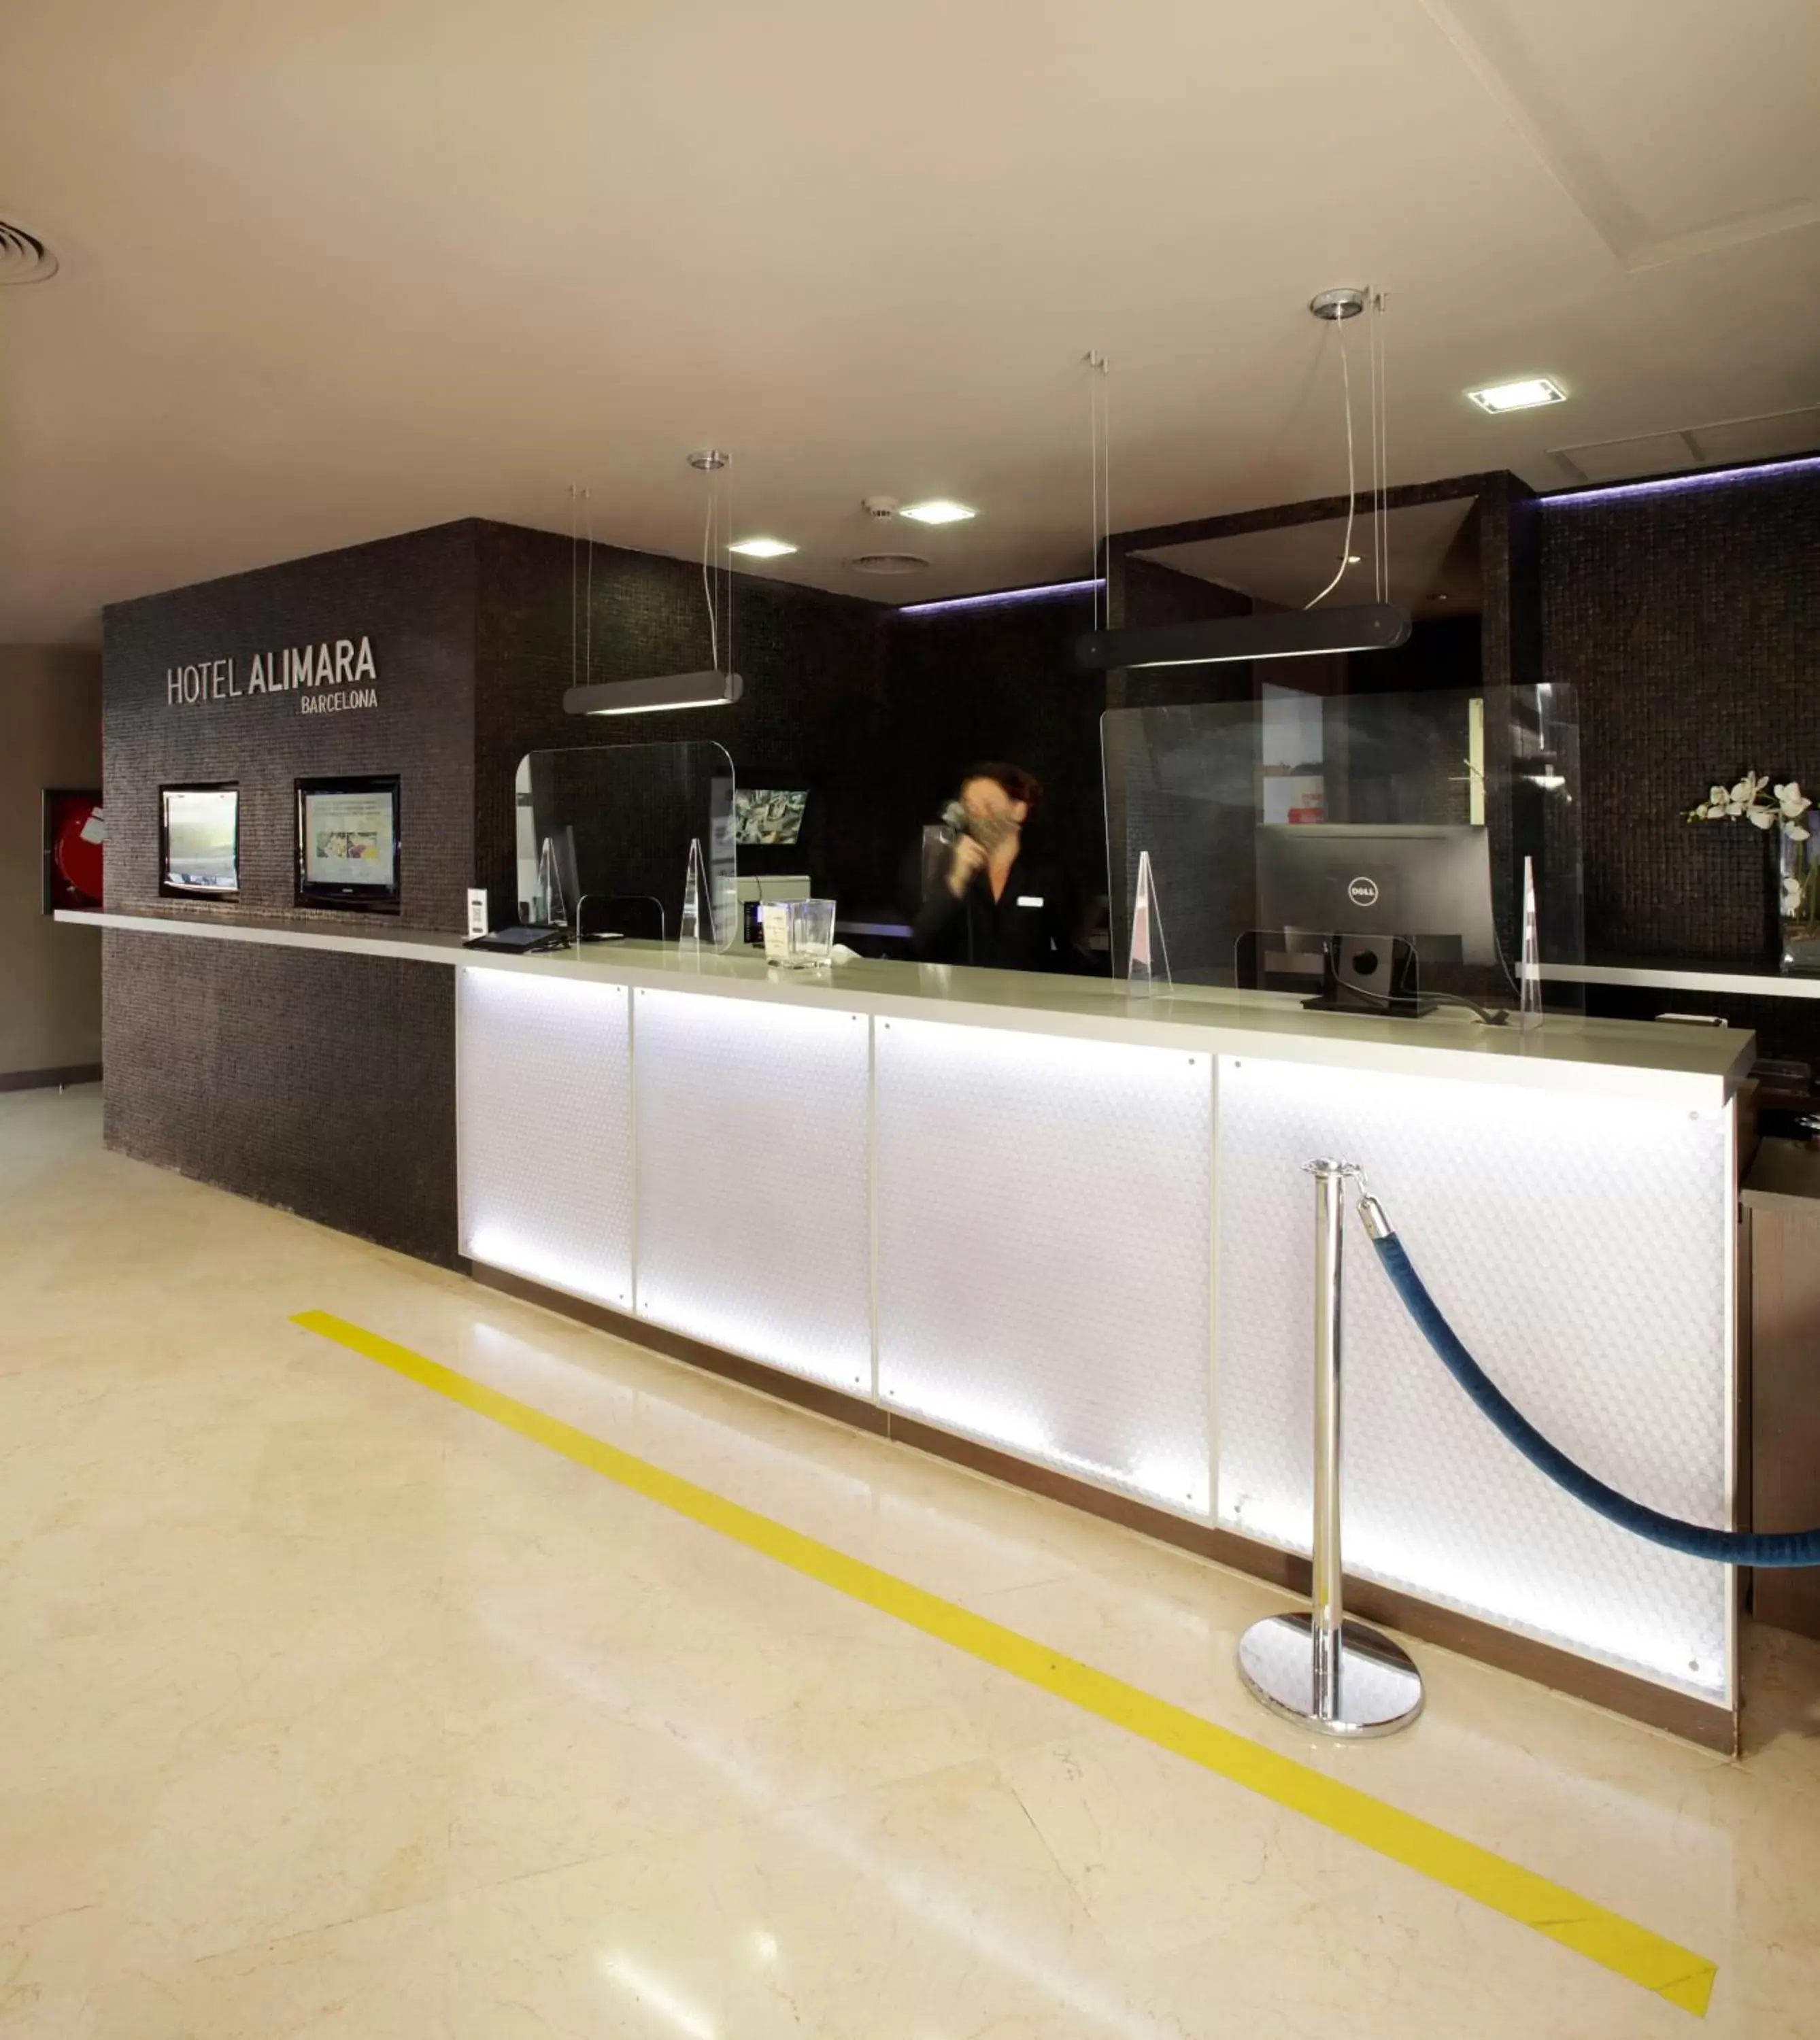 Lobby or reception in Hotel Alimara